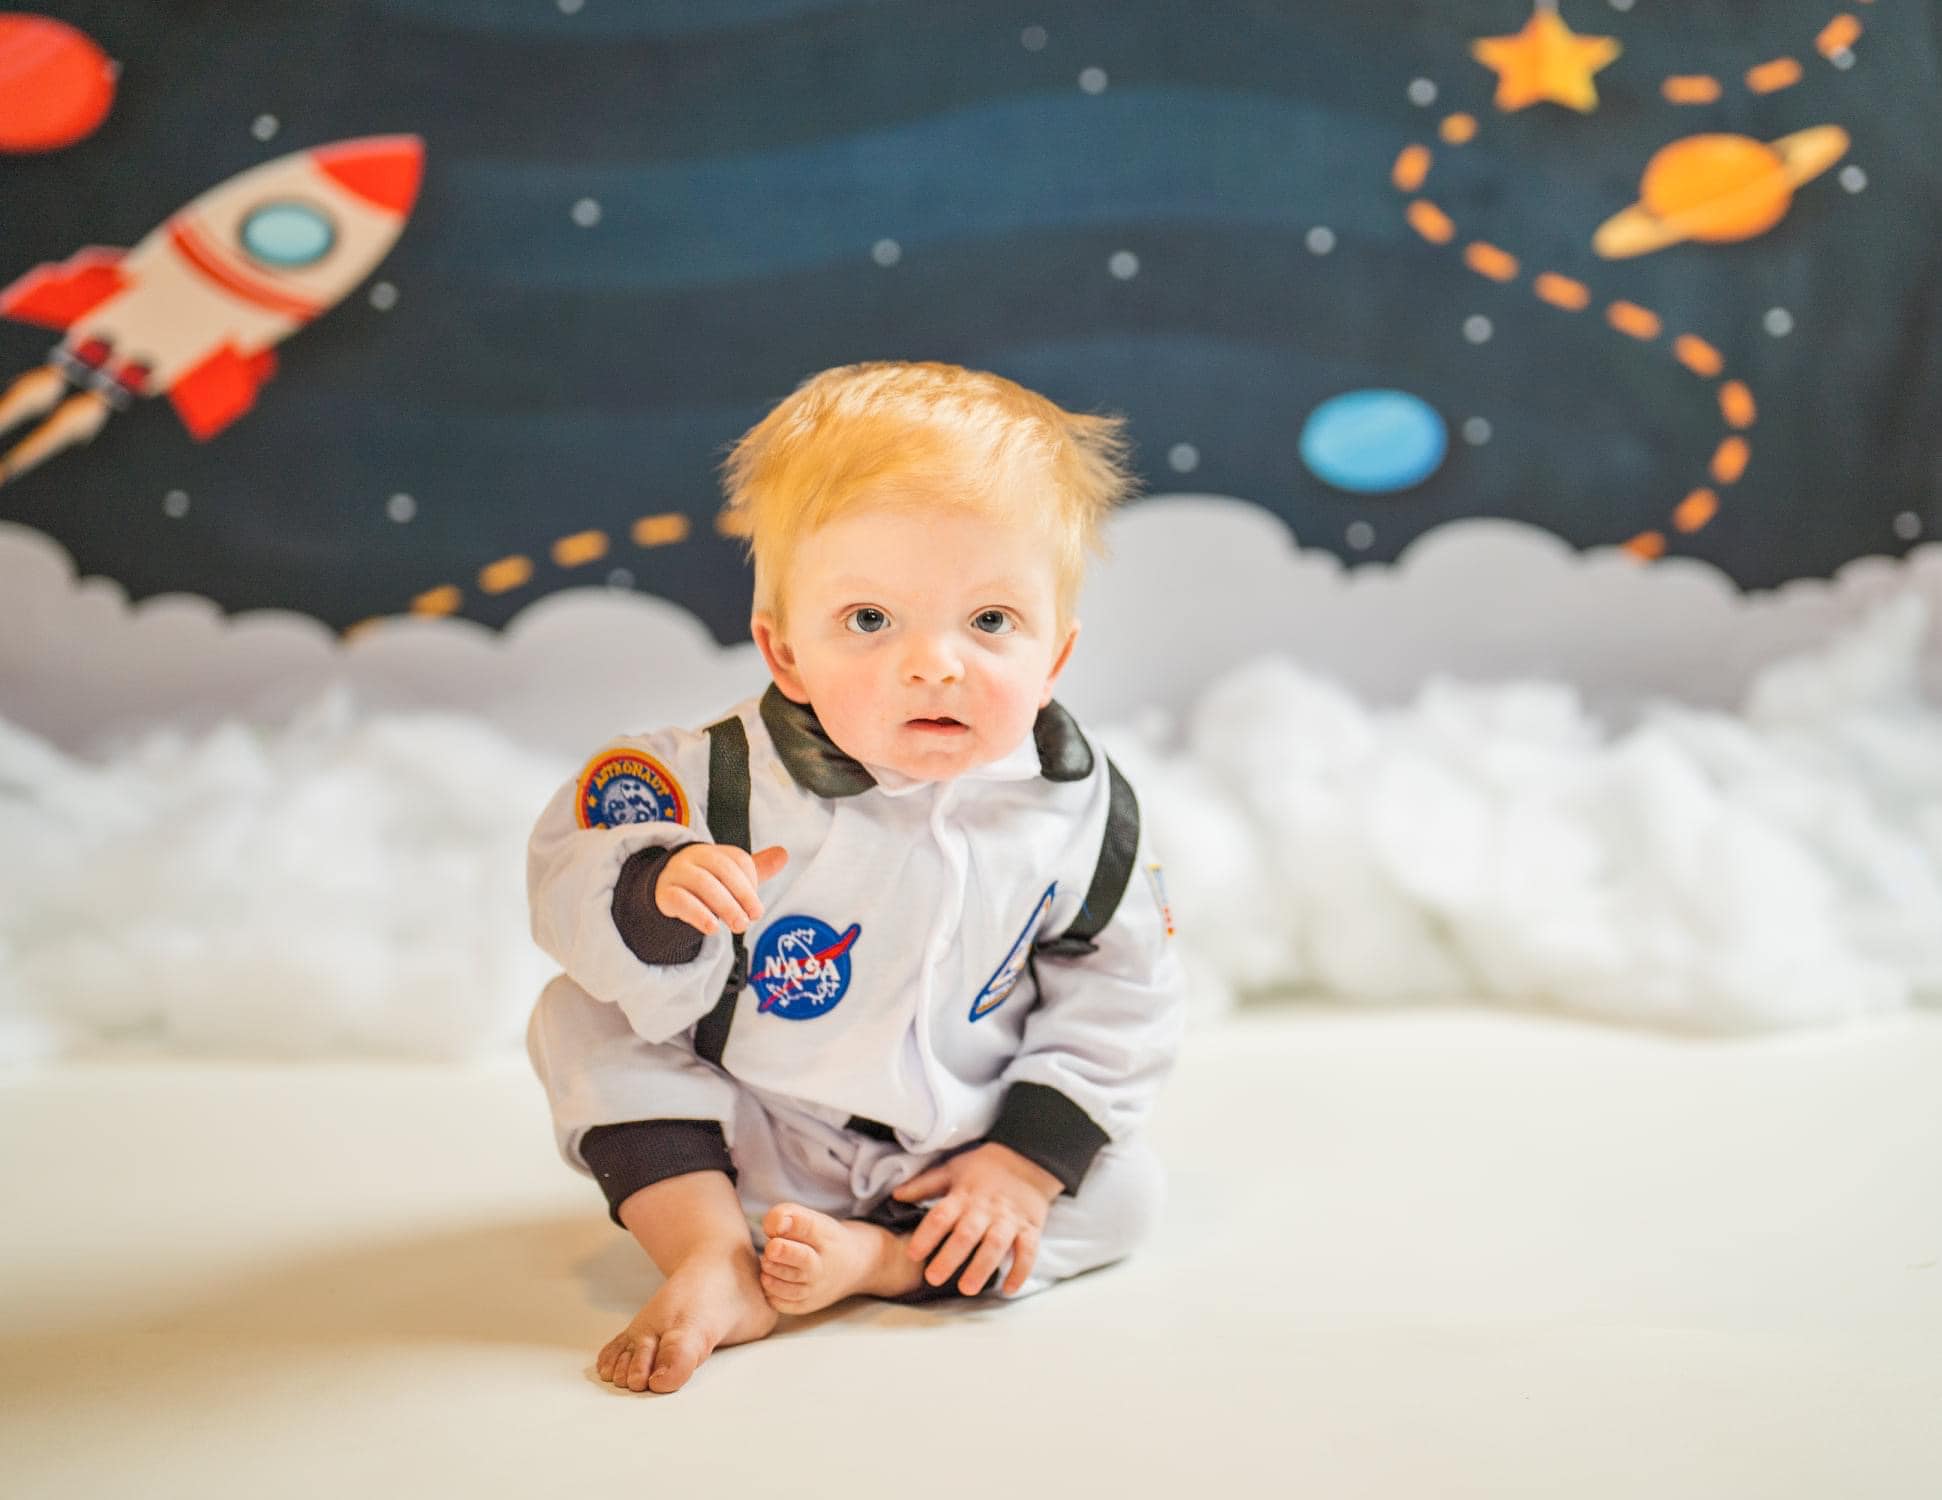 Kate Espace avec étoiles Moons Rocket enfants toile de fond pour la photographie conçu par Amanda Moffatt